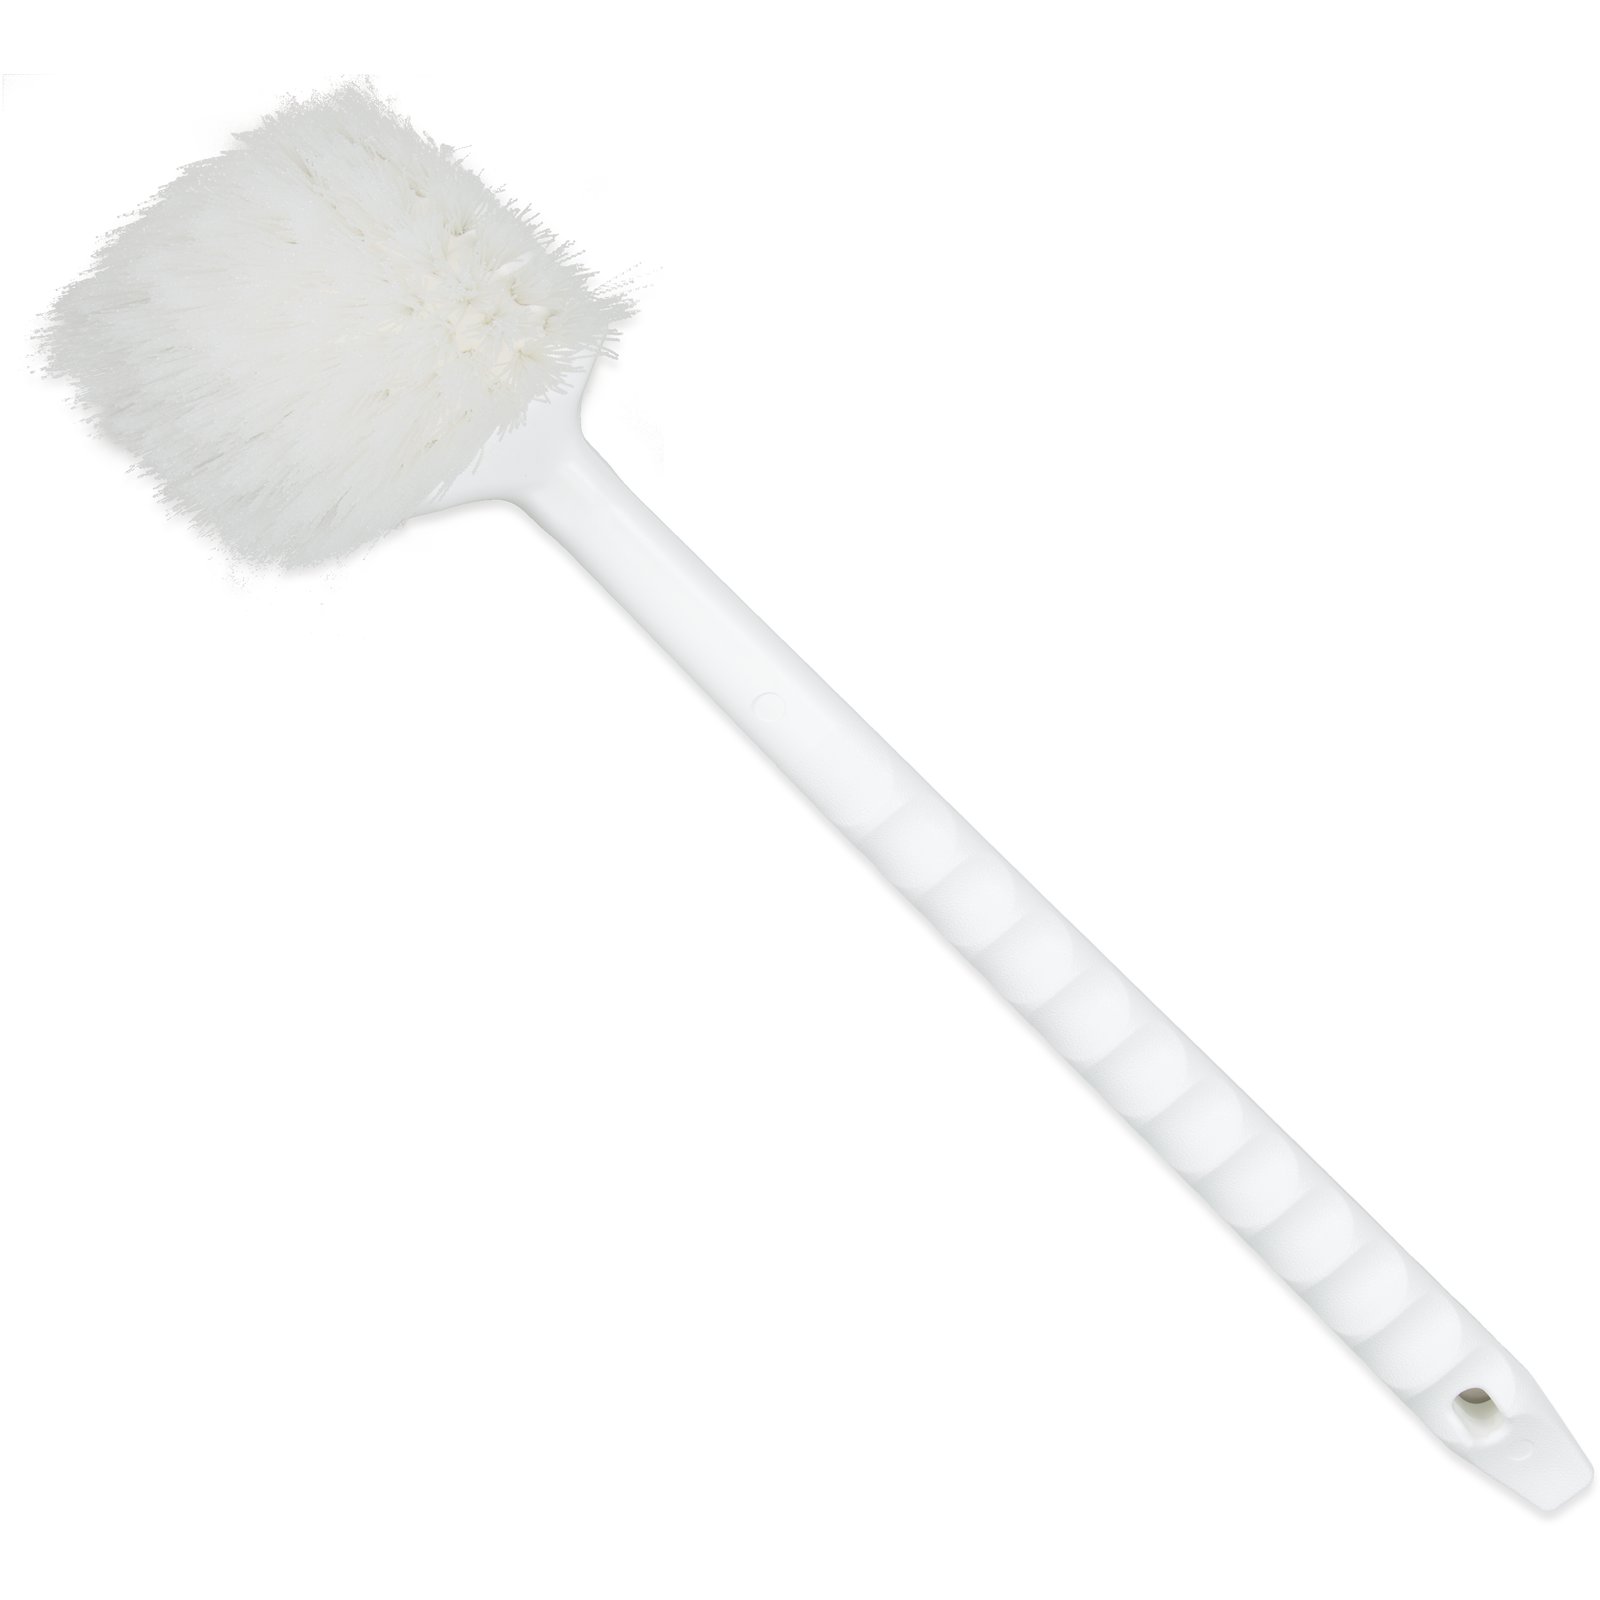 Cleaning Brush – Nylon